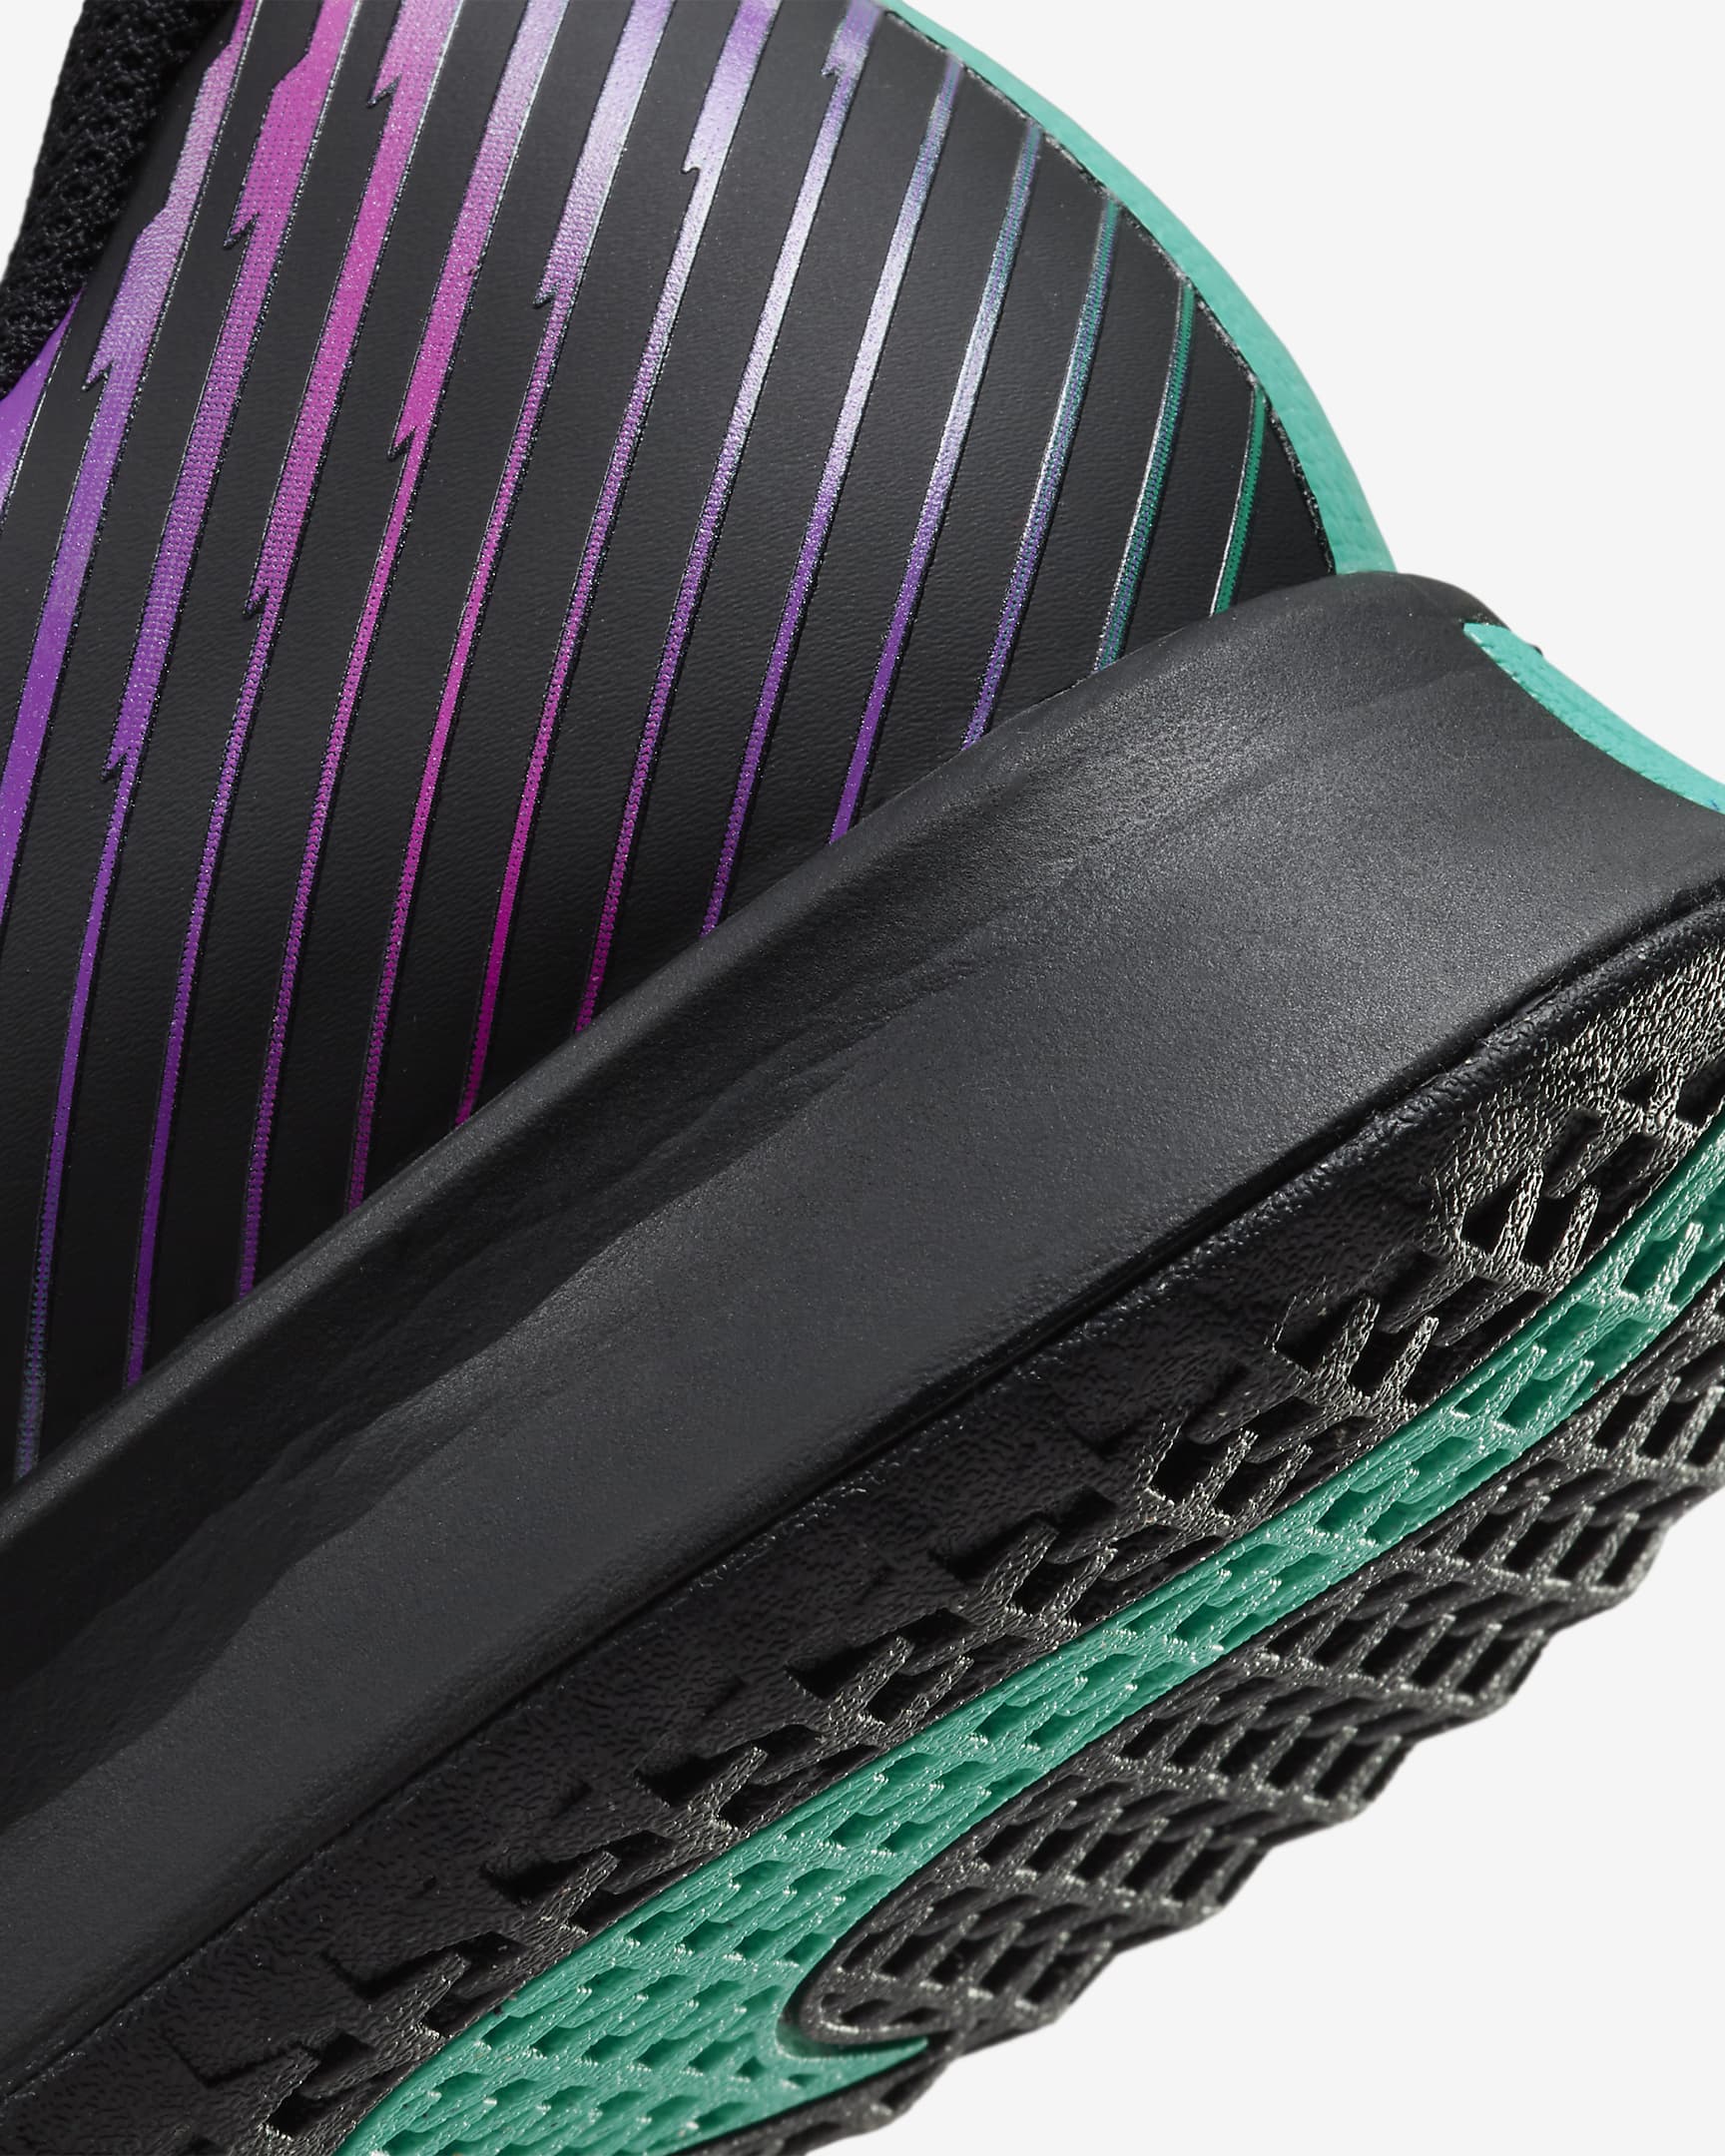 NikeCourt Air Zoom Vapor Pro 2 Premium Men's Hard Court Tennis Shoes ...